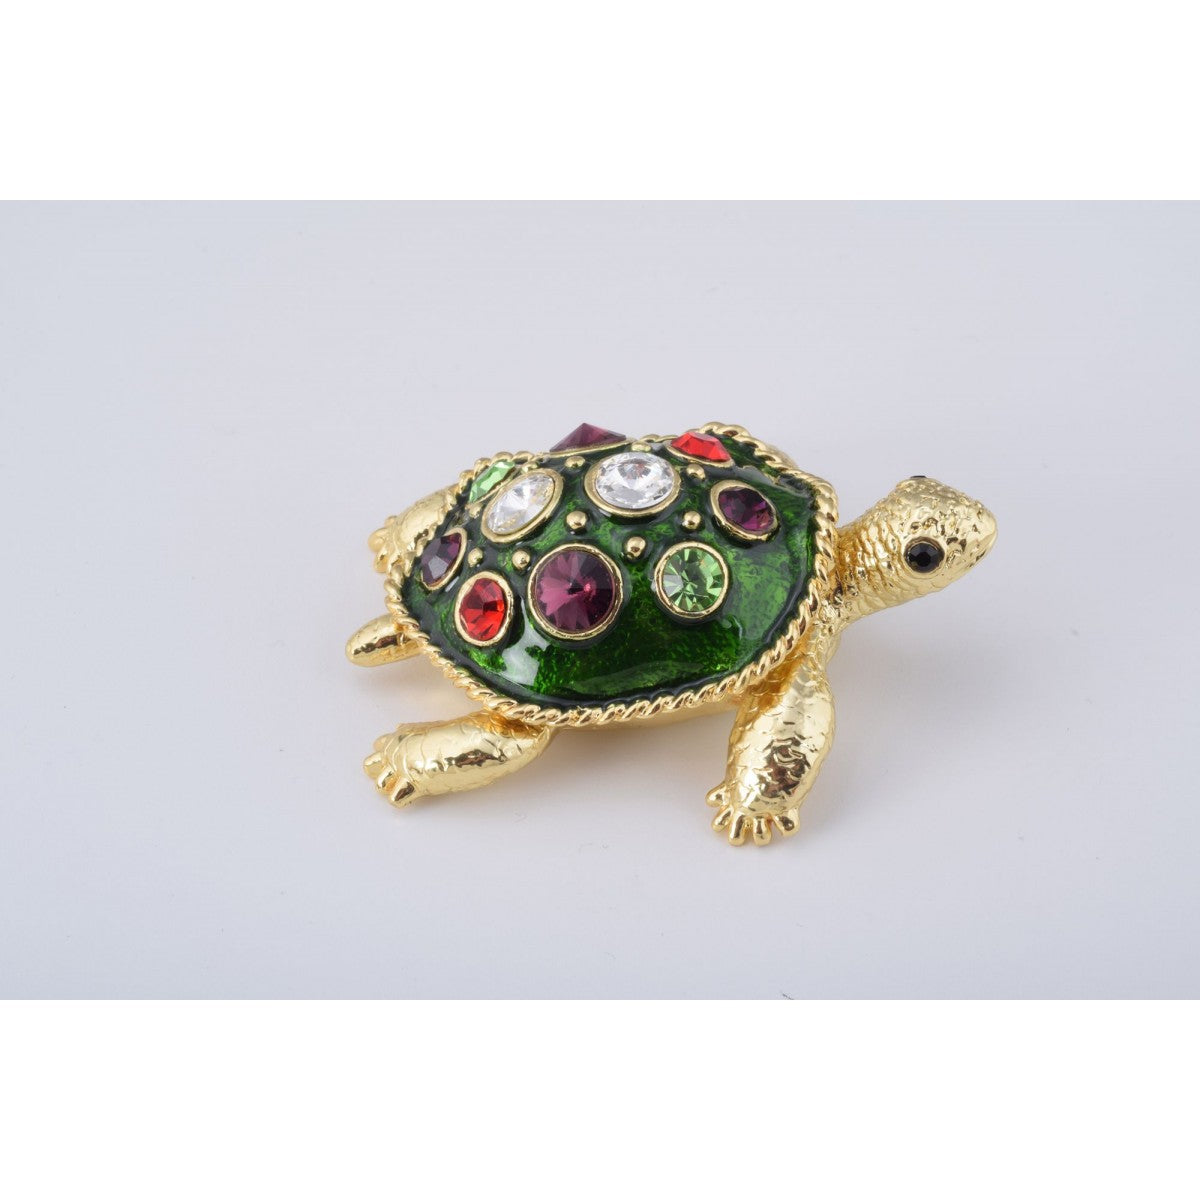 Sea Turtle Trinket Box by Keren Kopal